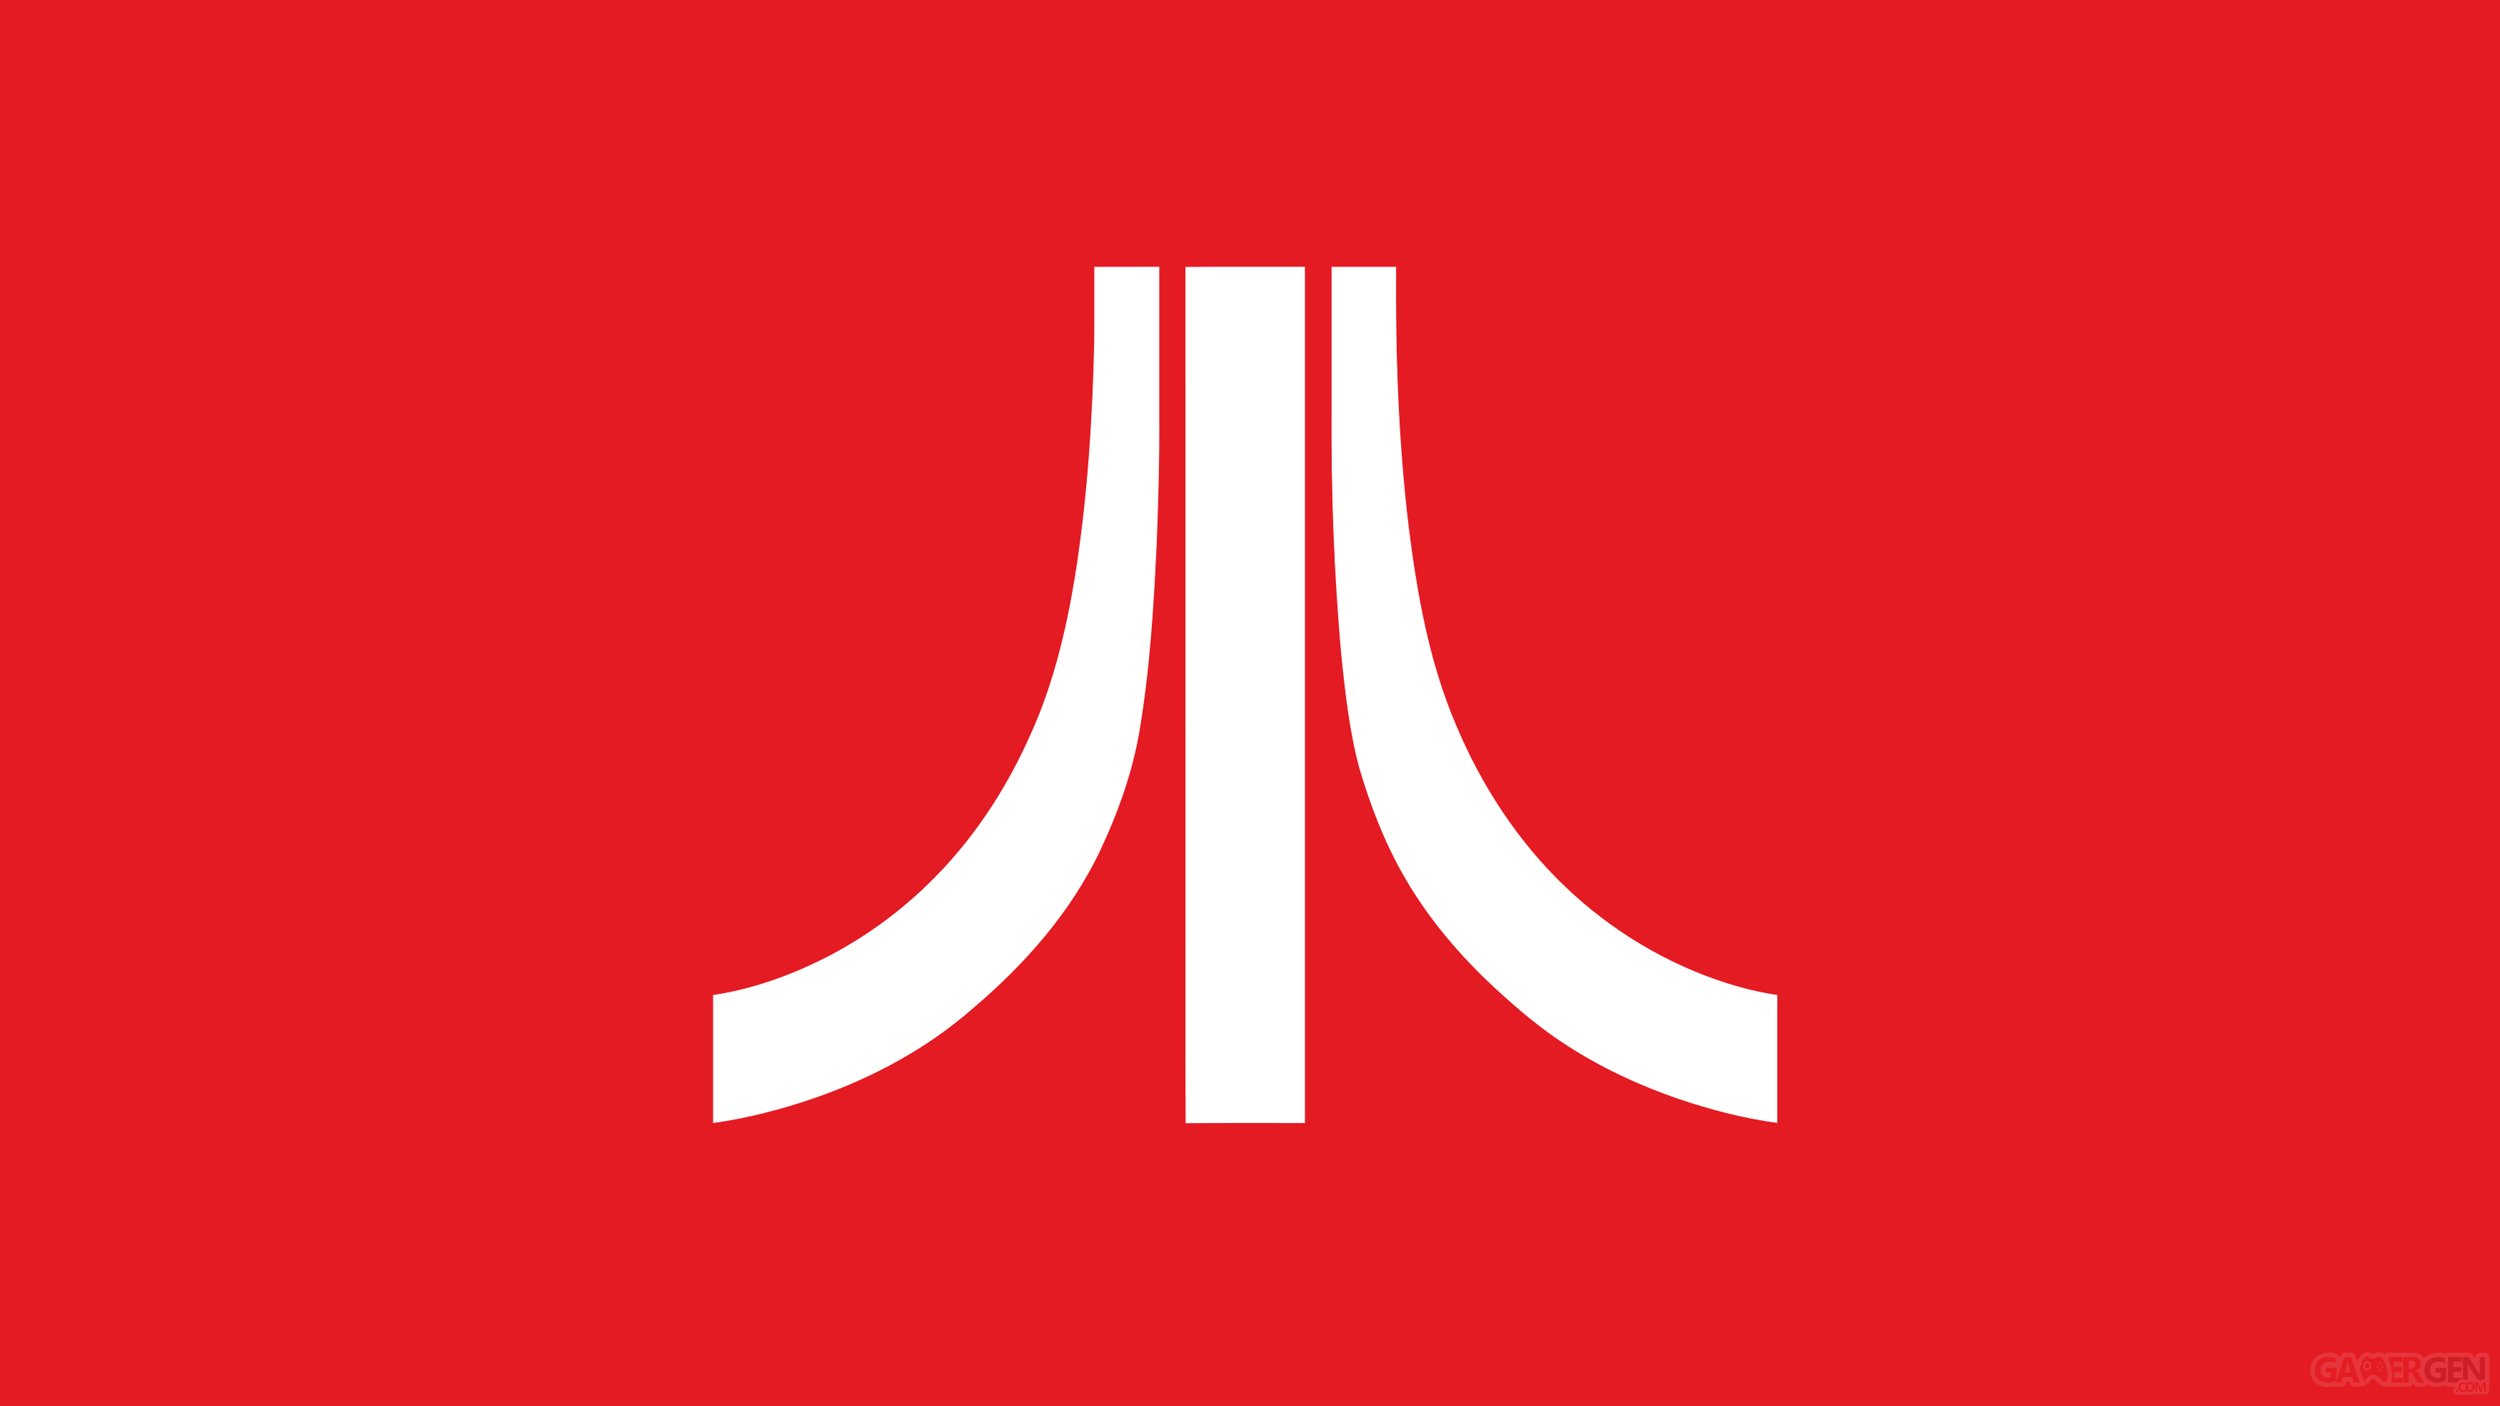 Atari va se relancer dans la création de jeux vidéo sur consoles et PC